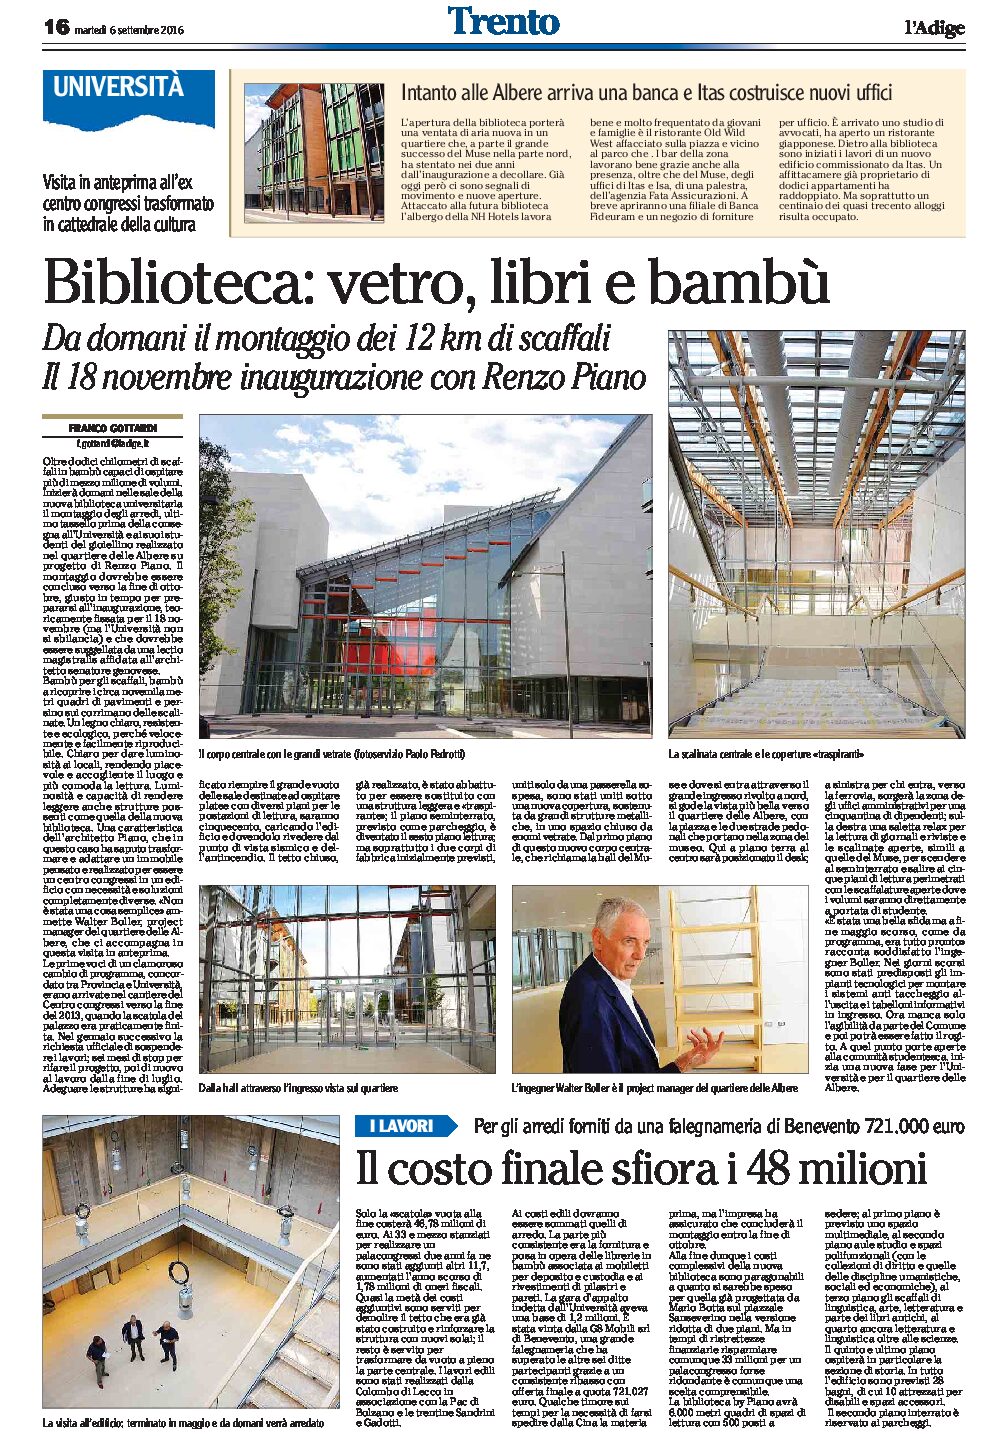 Trento, biblioteca universitaria: vetro libri e bambù. Inaugurazione il 18 novembre